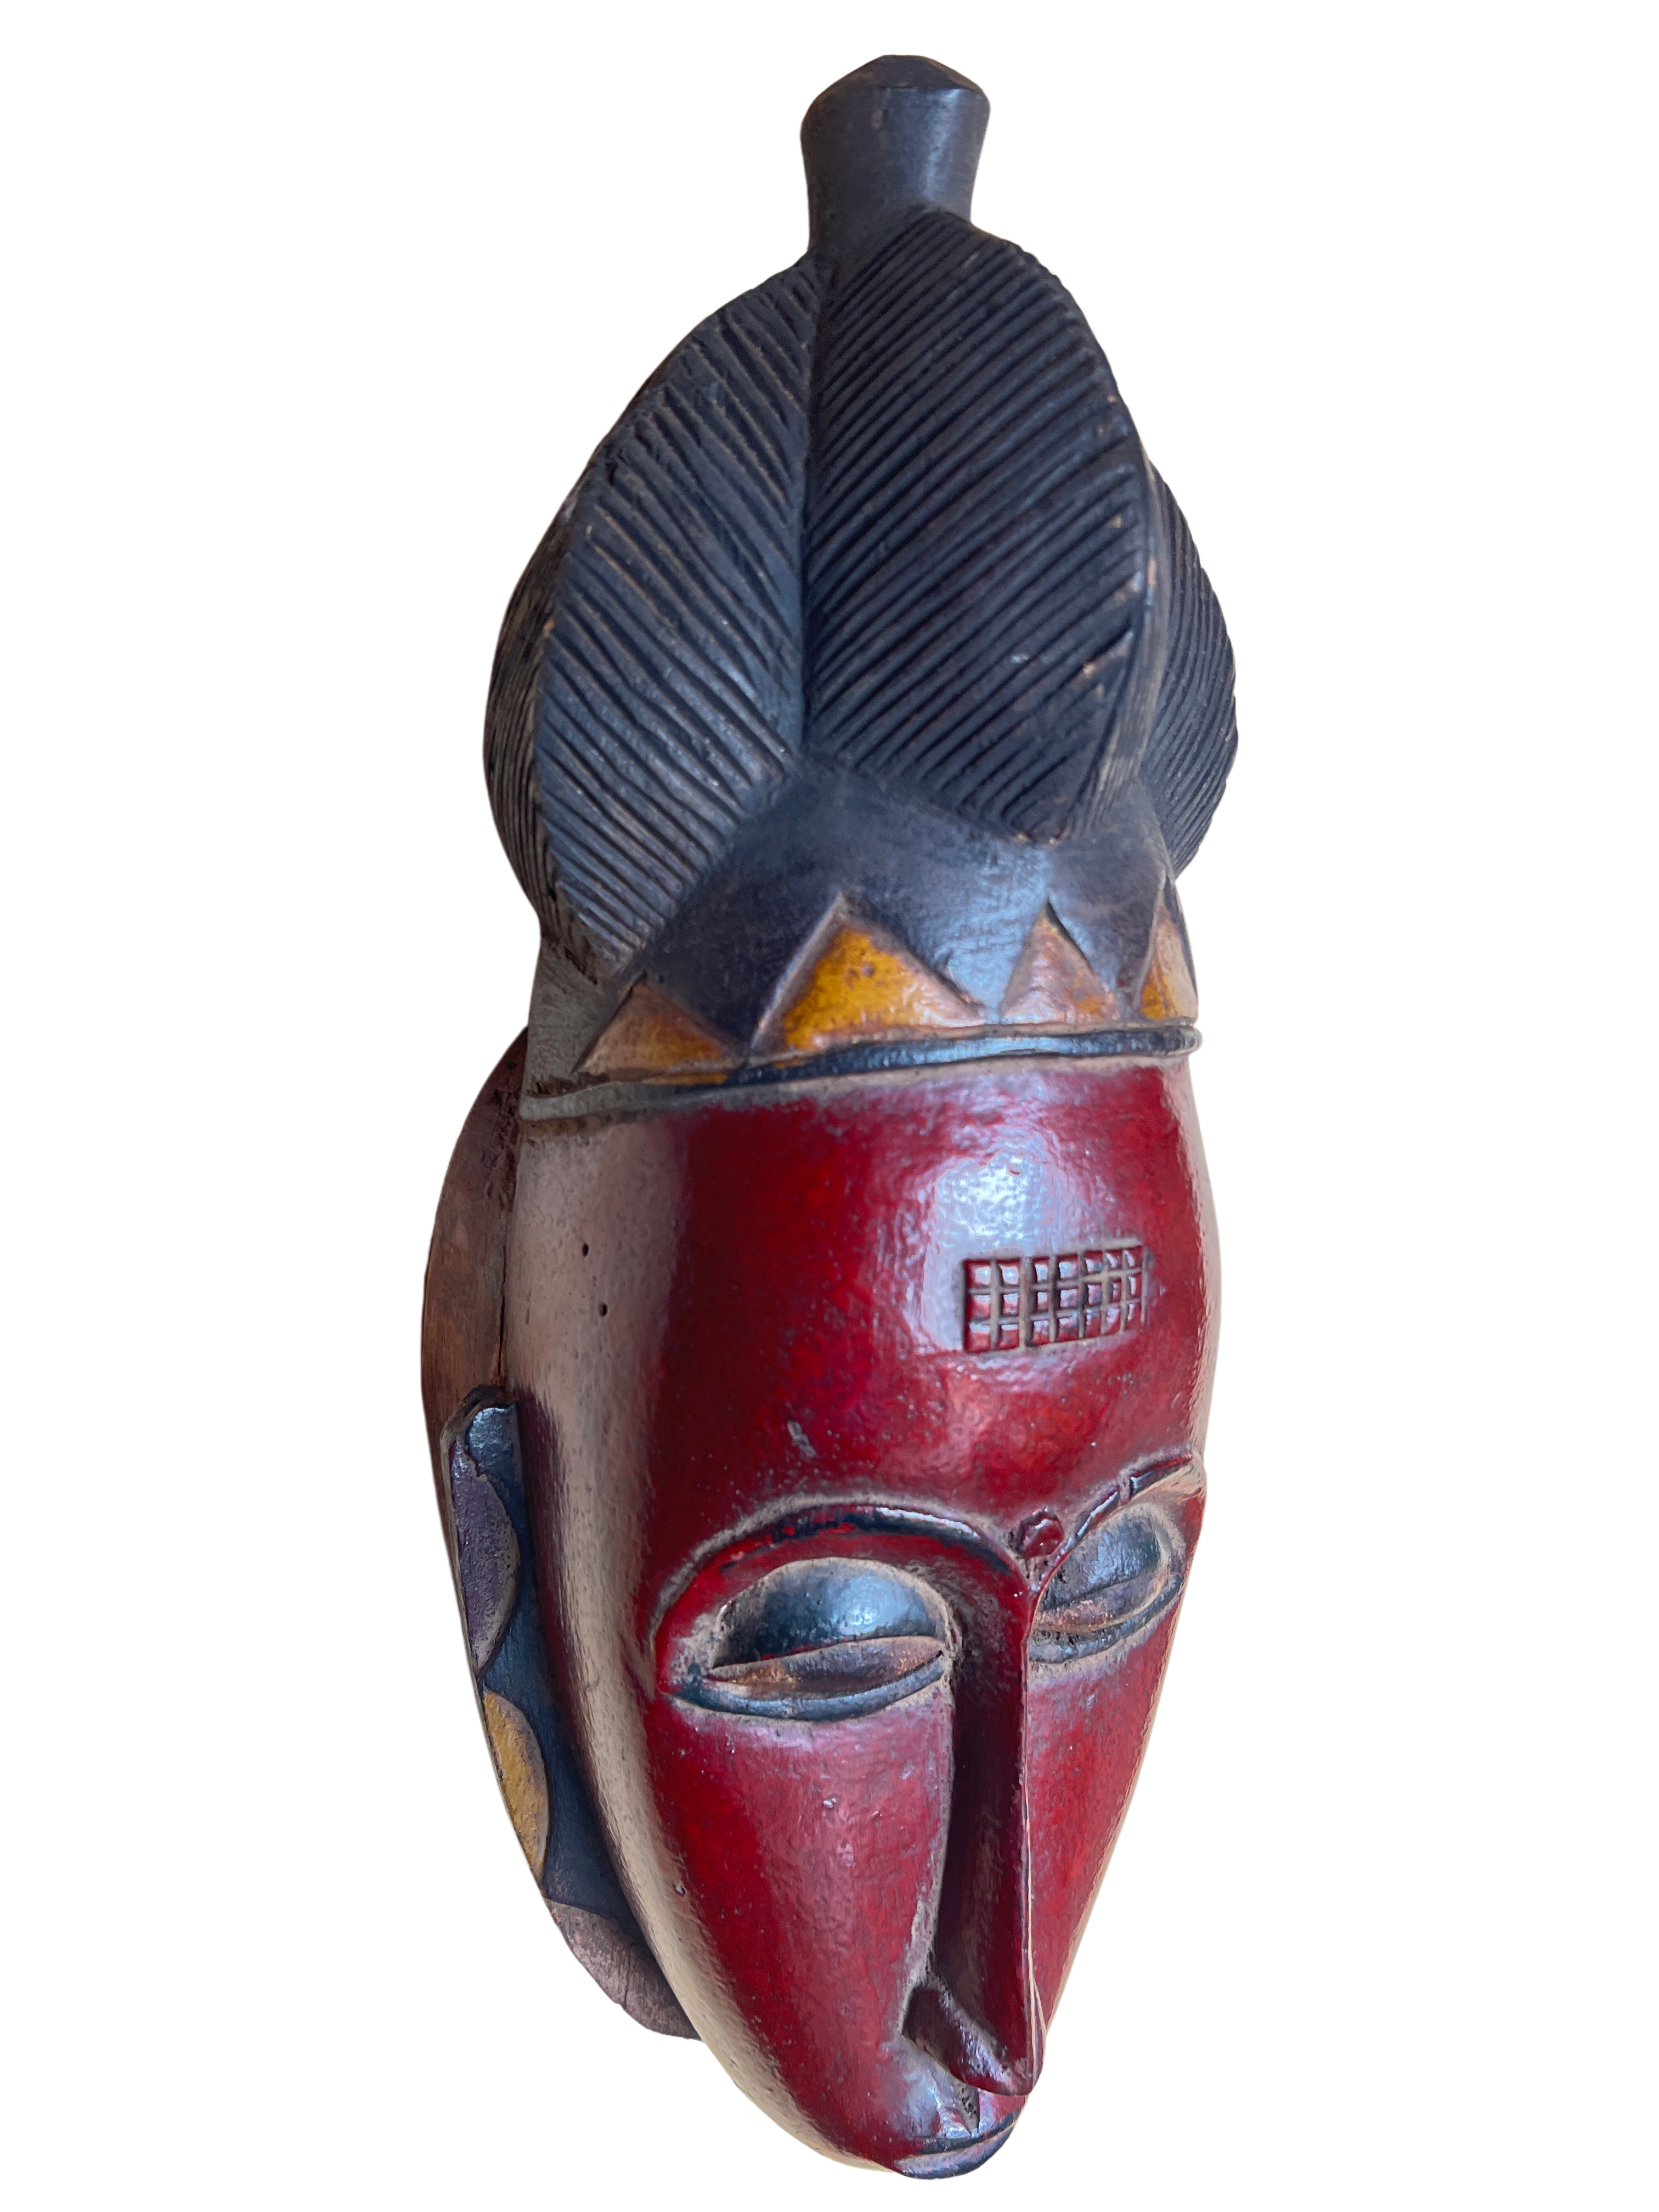 Baule Painted Mask - Baule